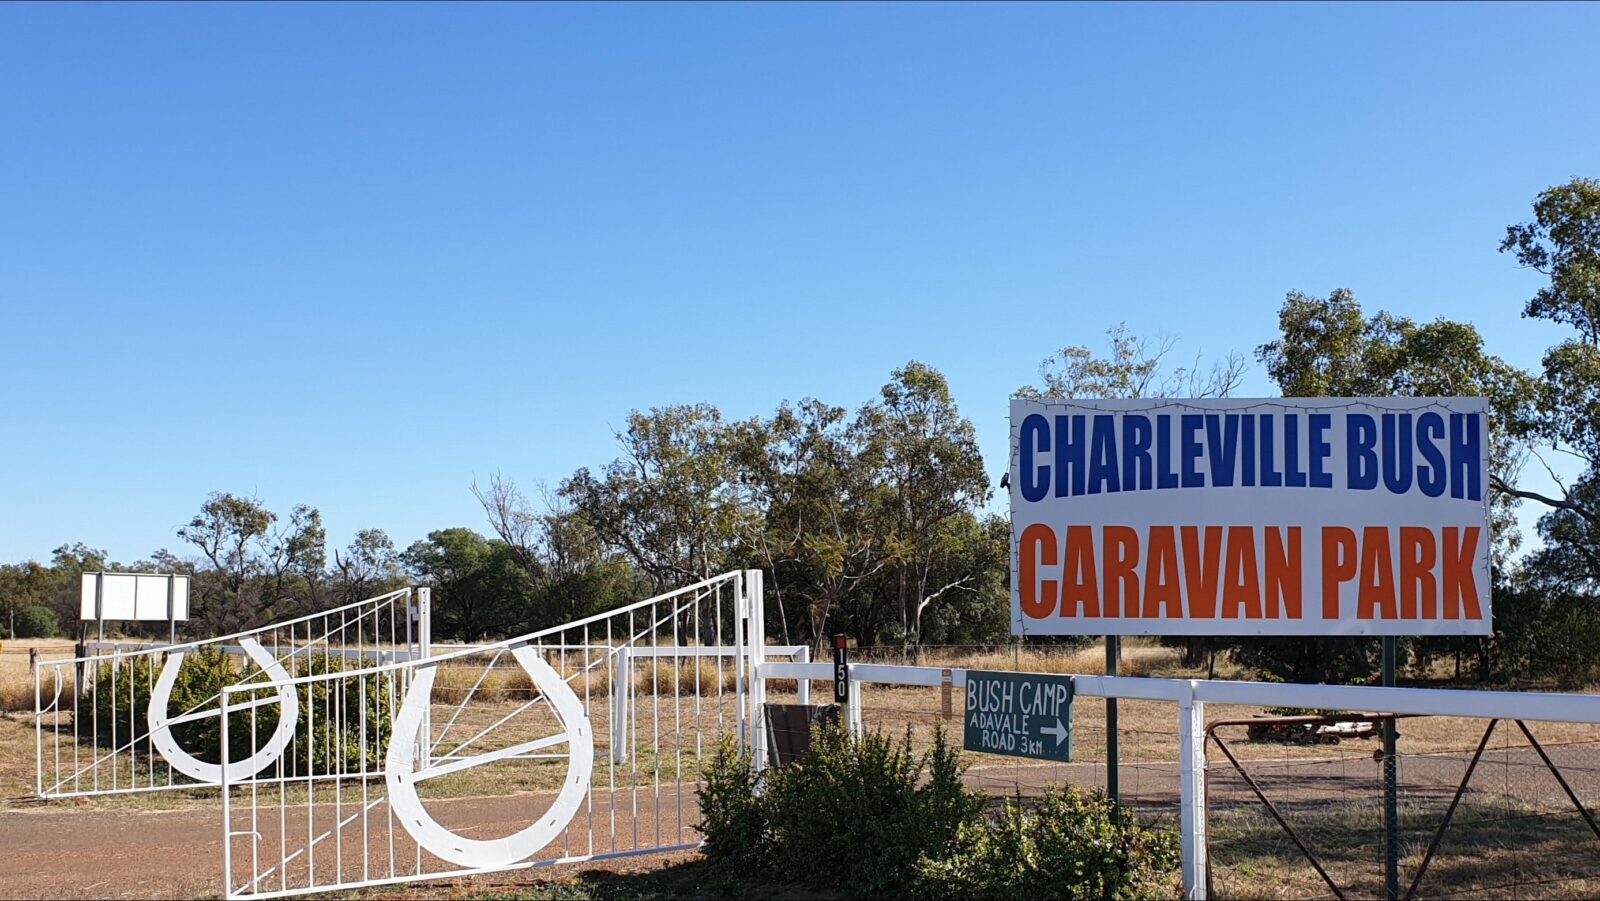 Entrance to caravan park